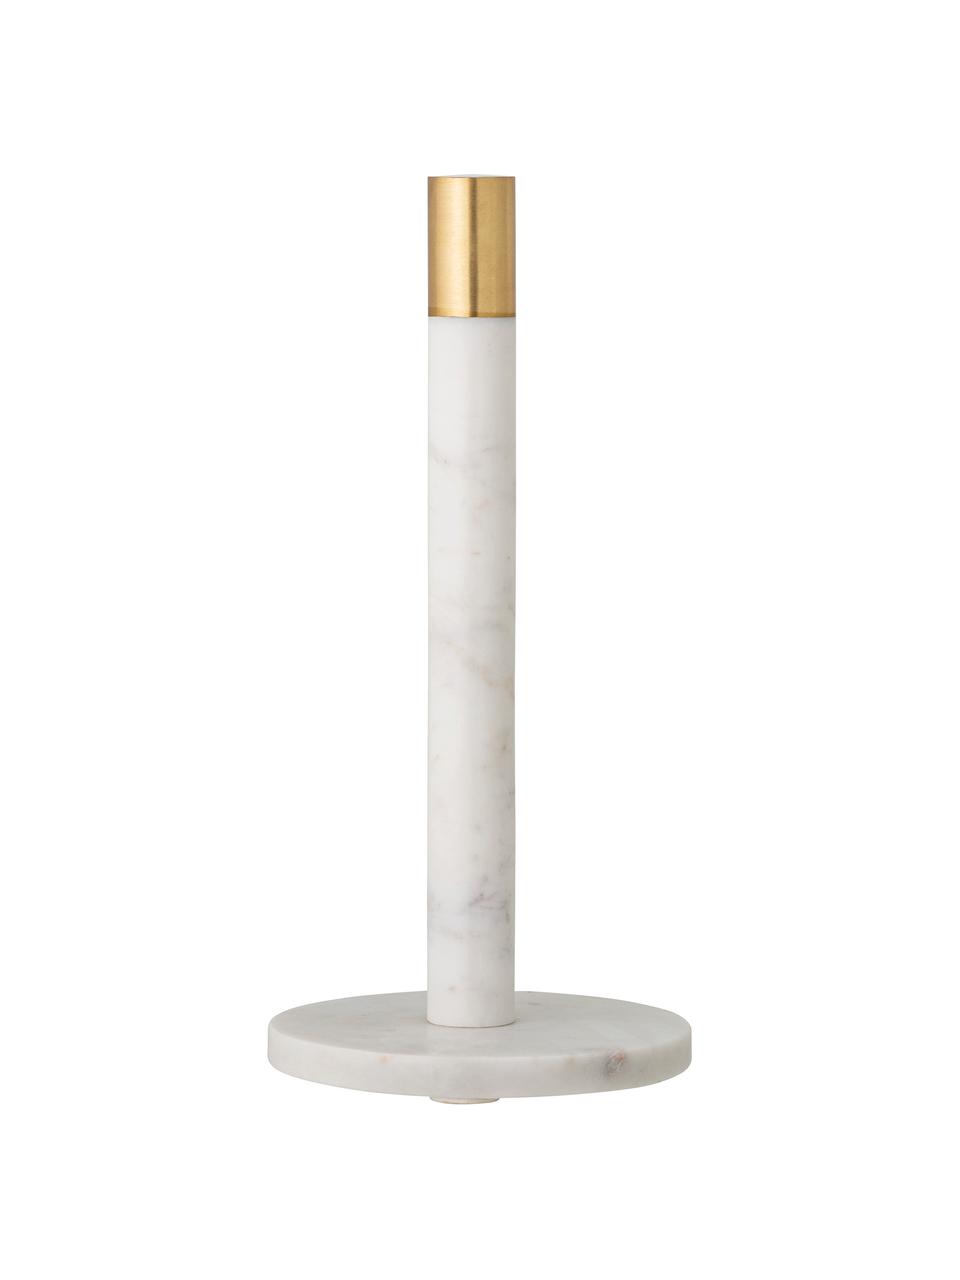 Portarotolo da cucina in marmo Emira, Marmo bianco, dorato, Ø 15 cm